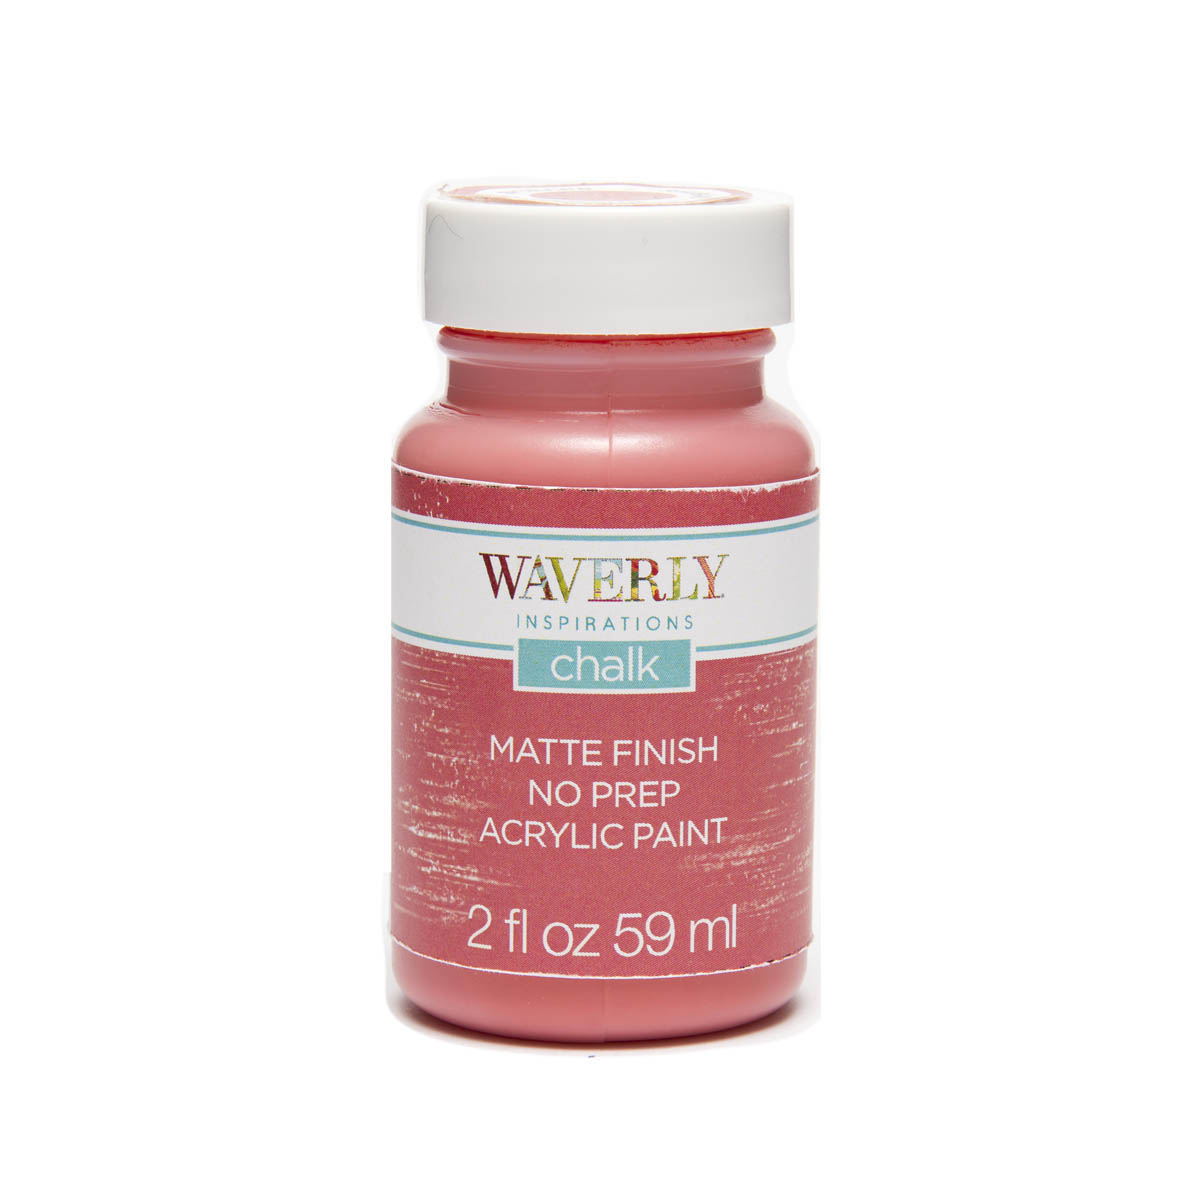 Waverly ® Inspirations Chalk Finish Acrylic Paint - Rhubarb, 2 oz. - 60741E